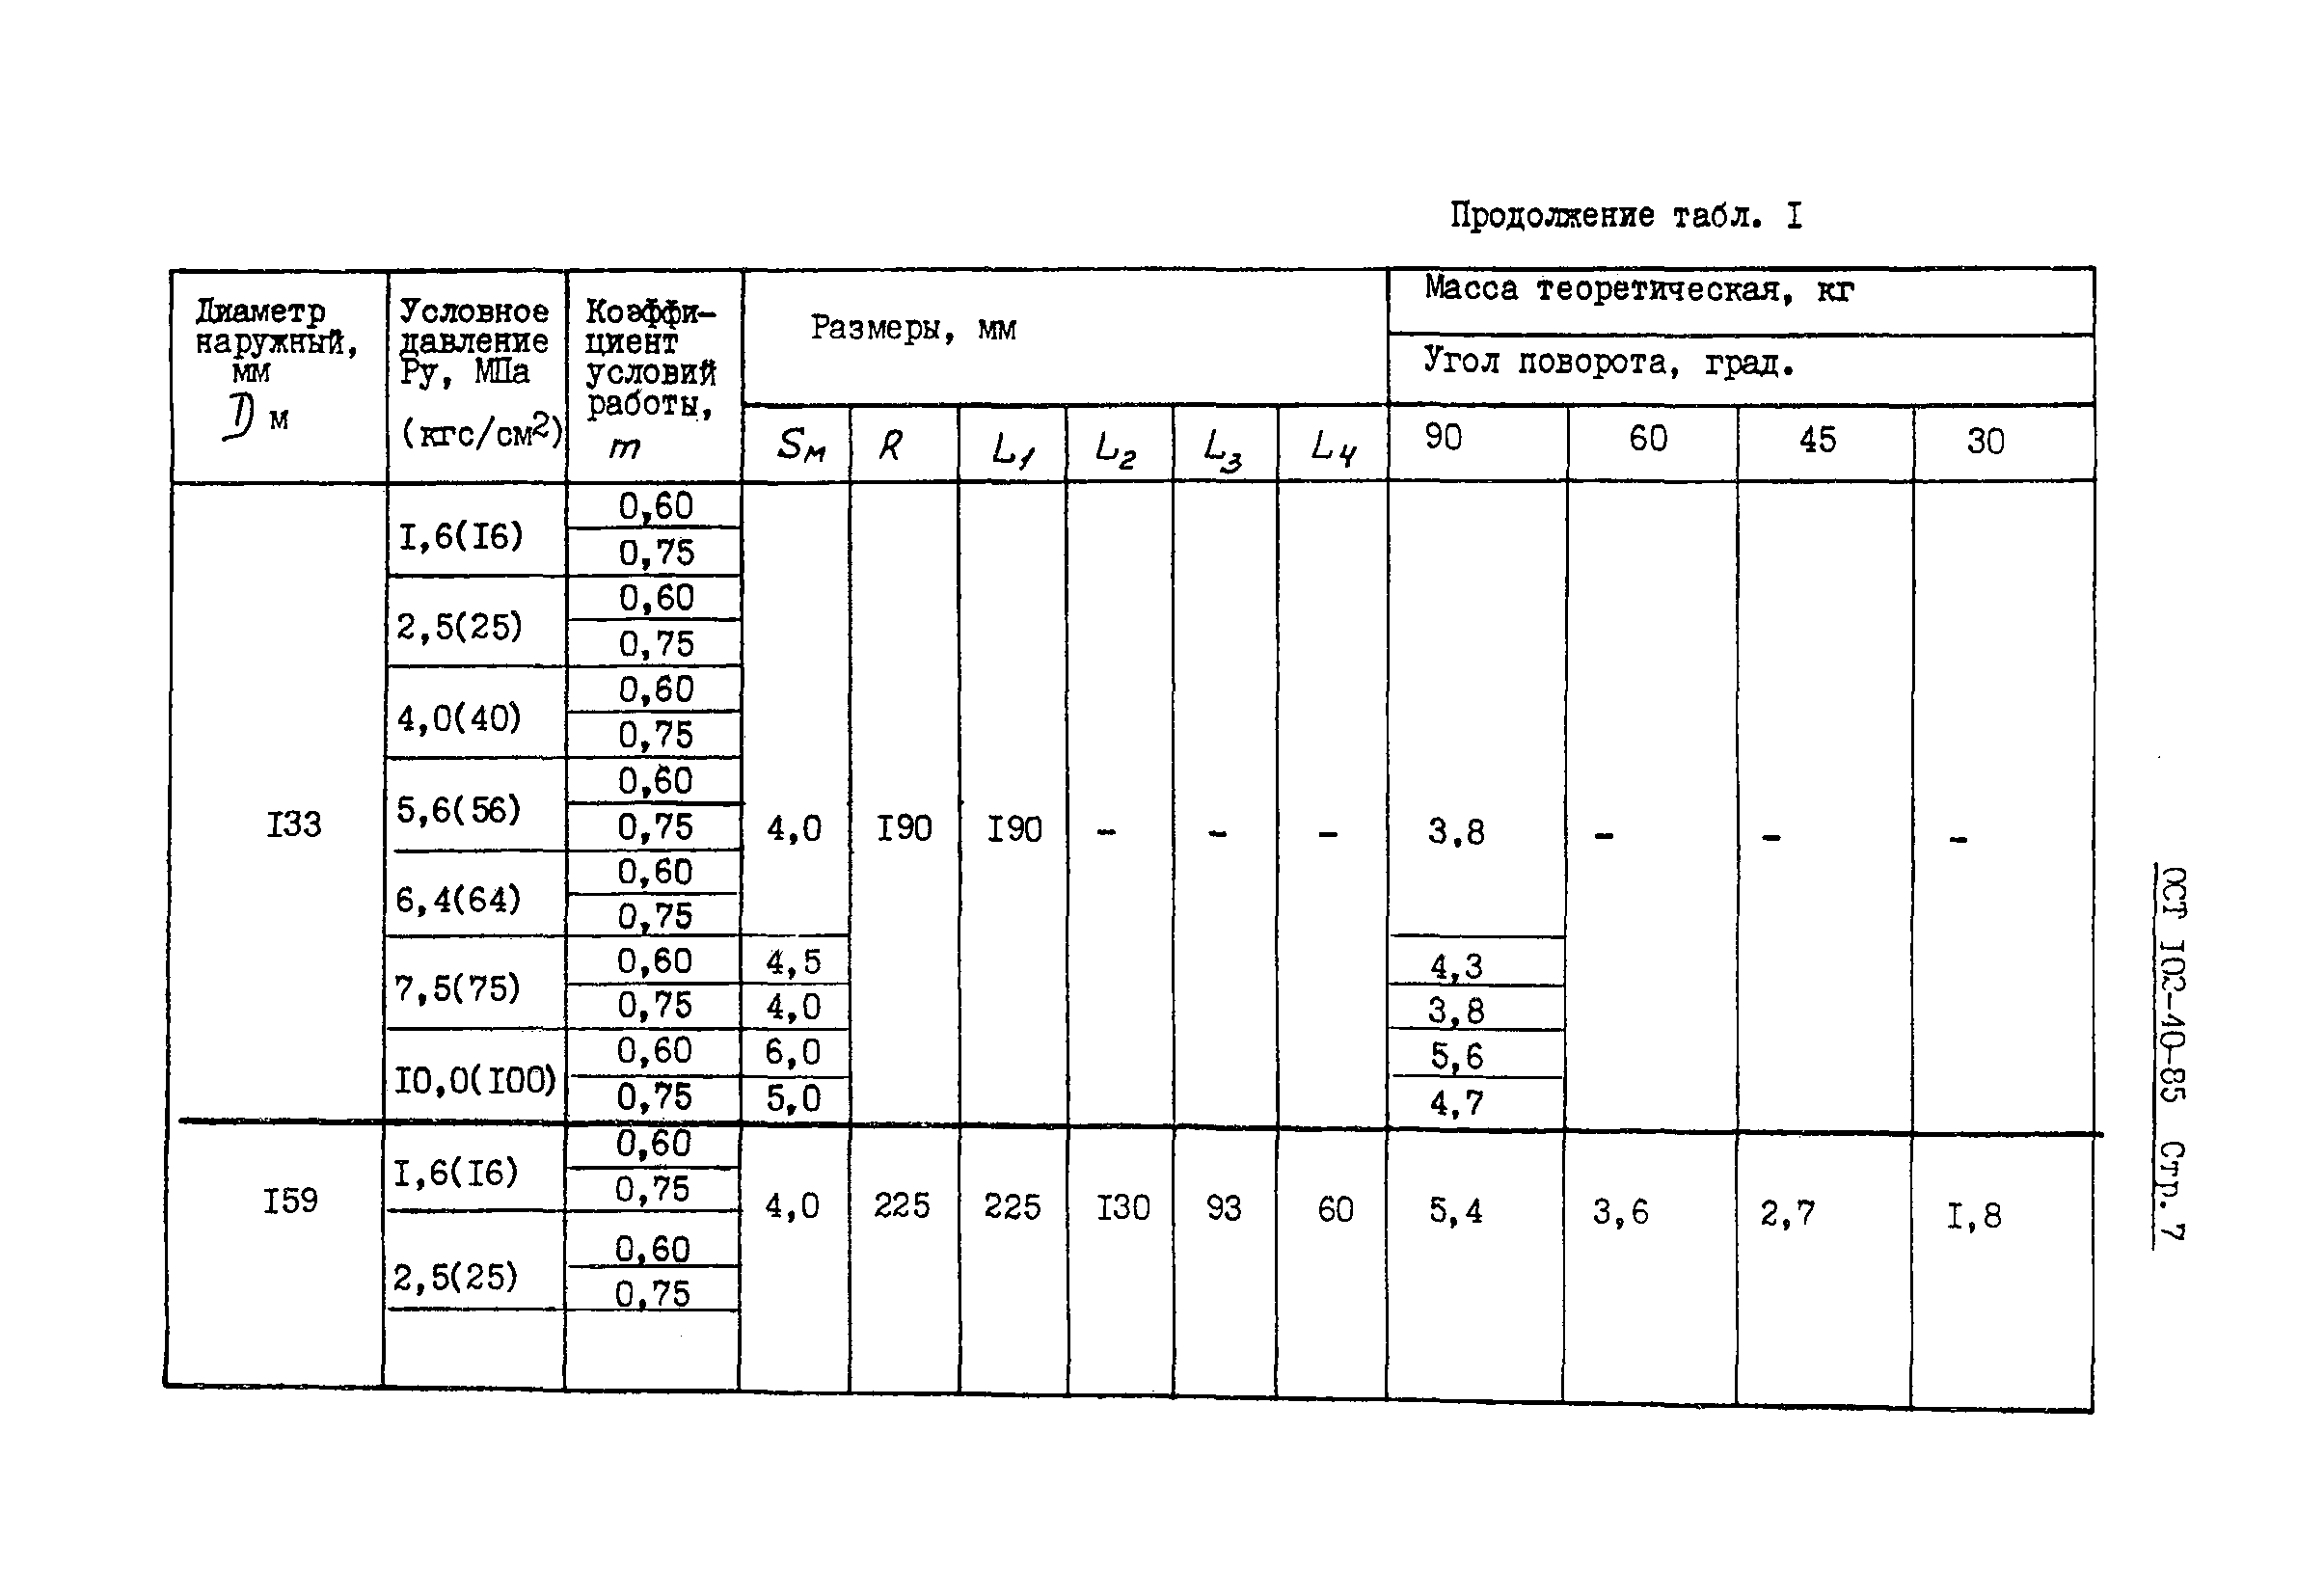 ОСТ 102-40-85